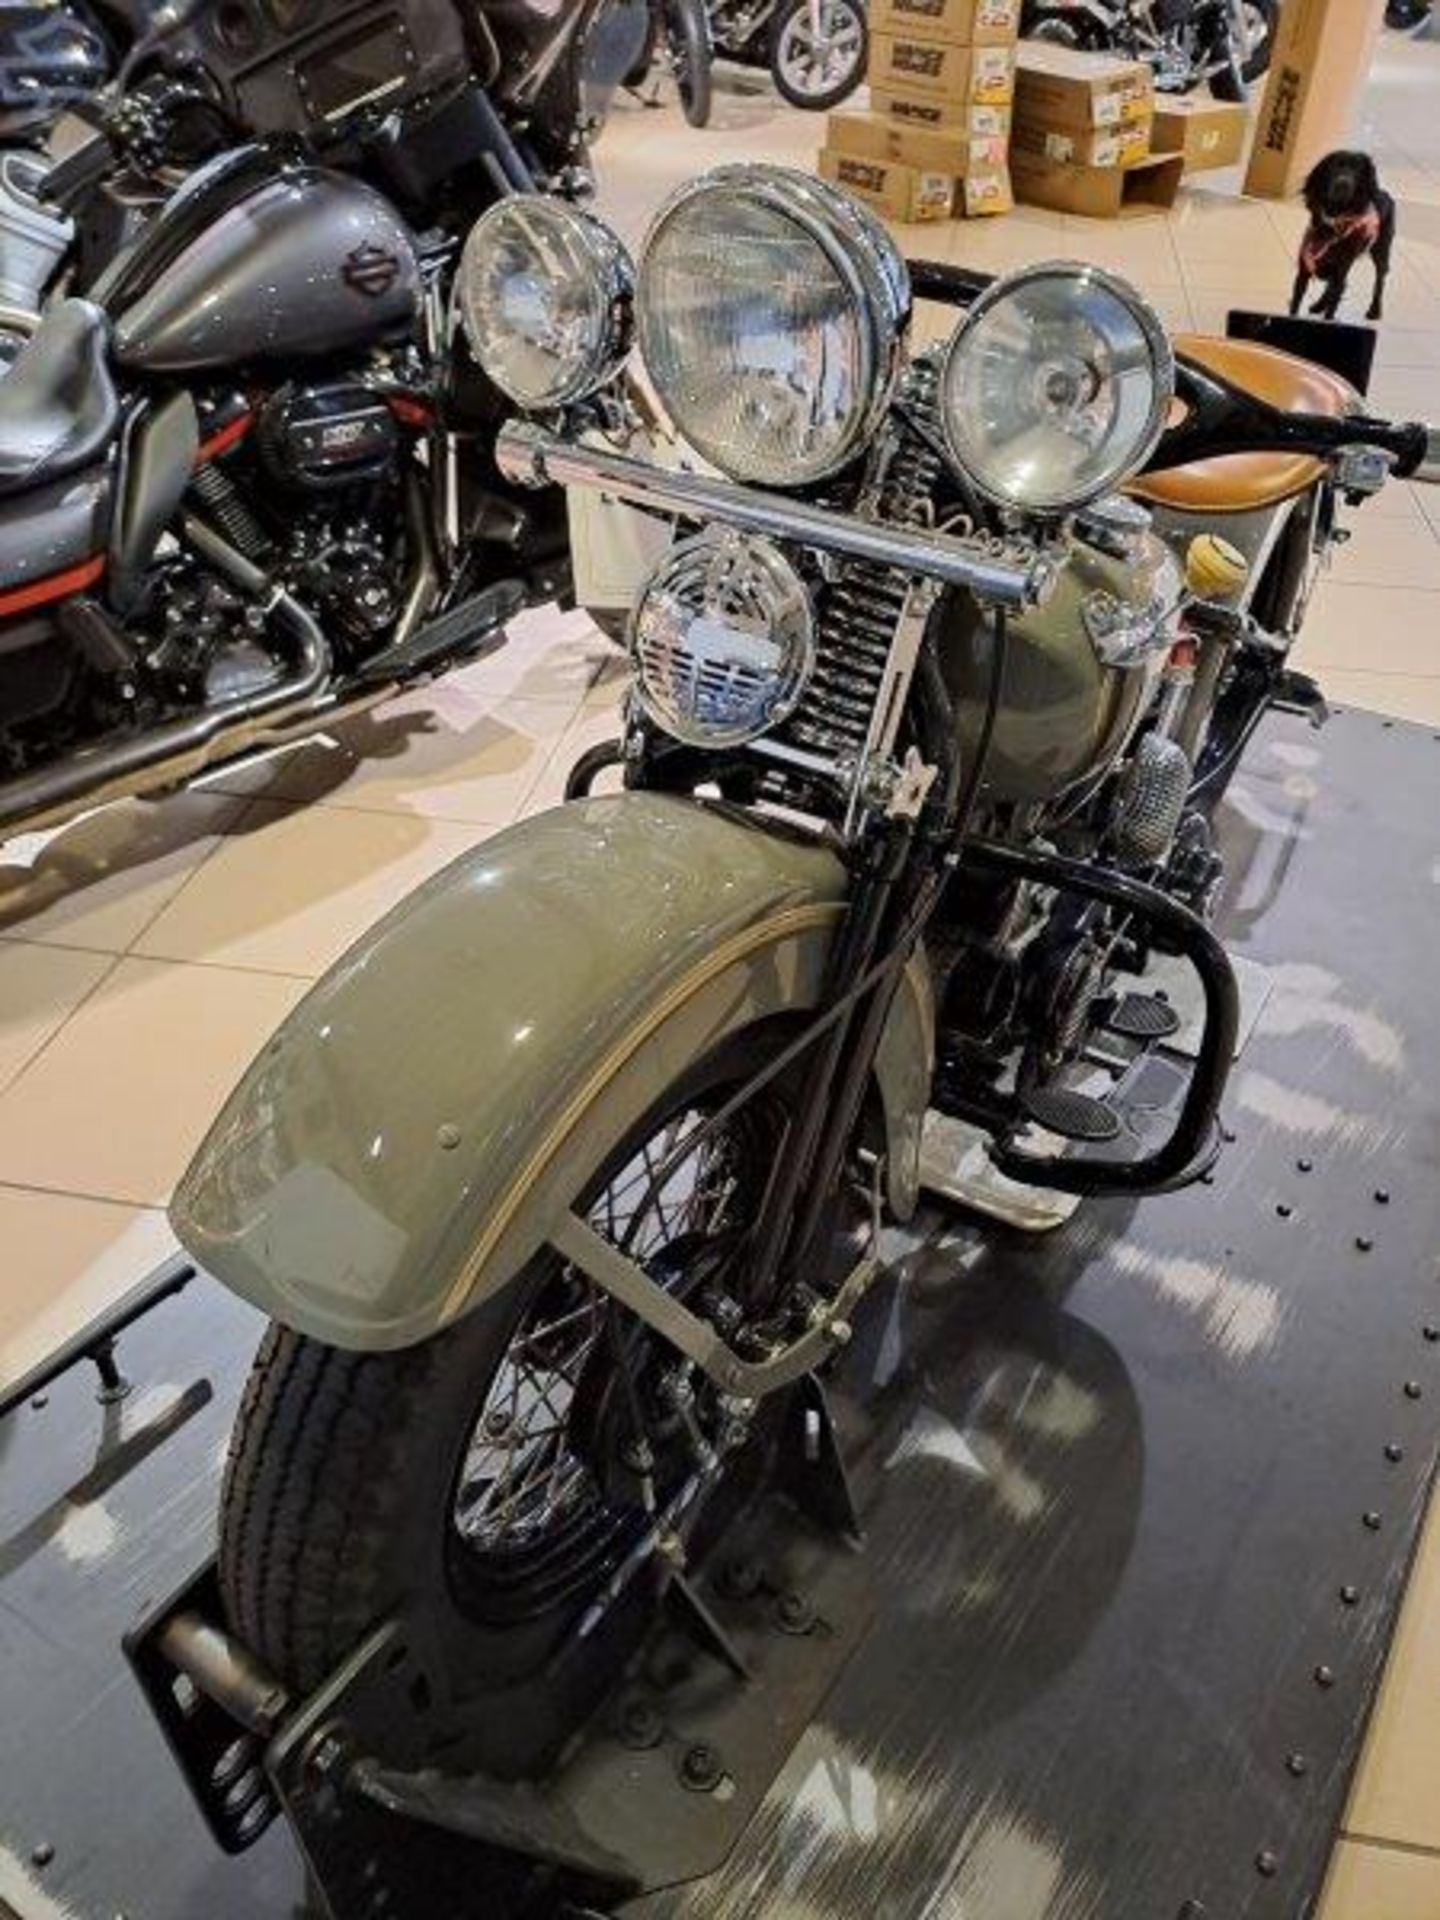 Harley Davidson WLA 750 Restored Vintage Motorbike (1942) - Image 19 of 23